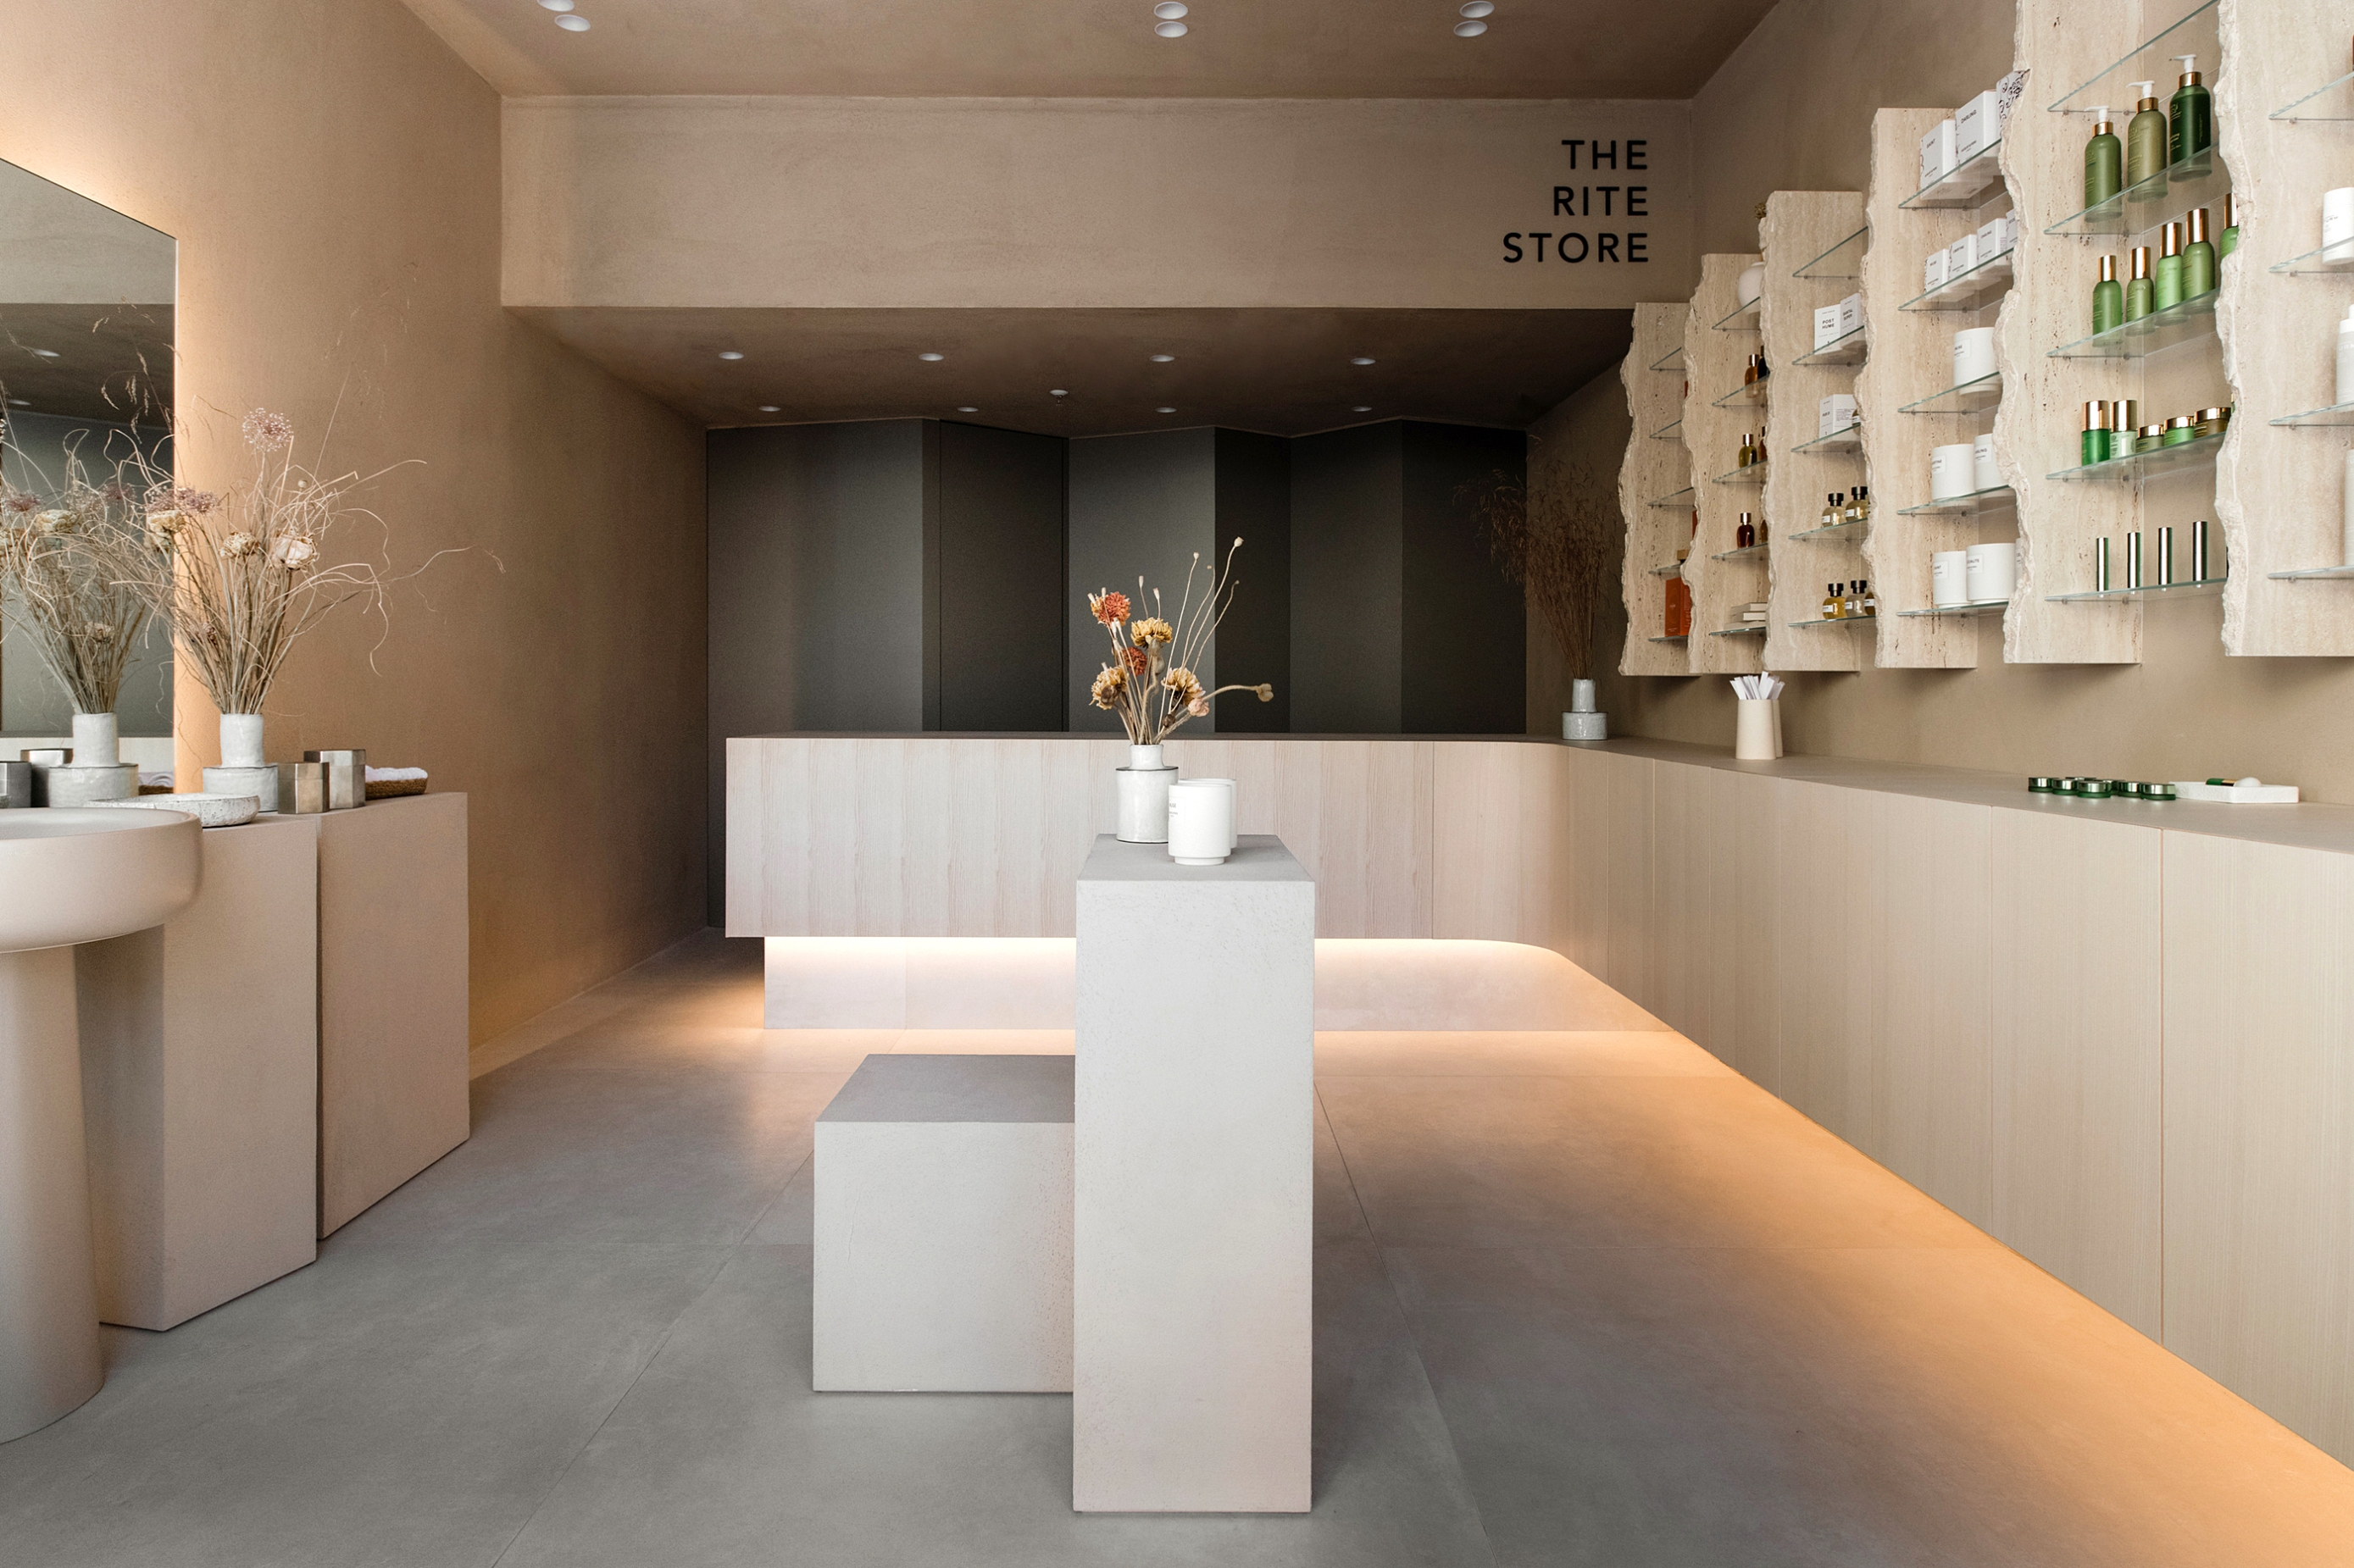 Otvoren je The Rite Store – Jedna od najljepših beauty concept trgovina u Zagrebu